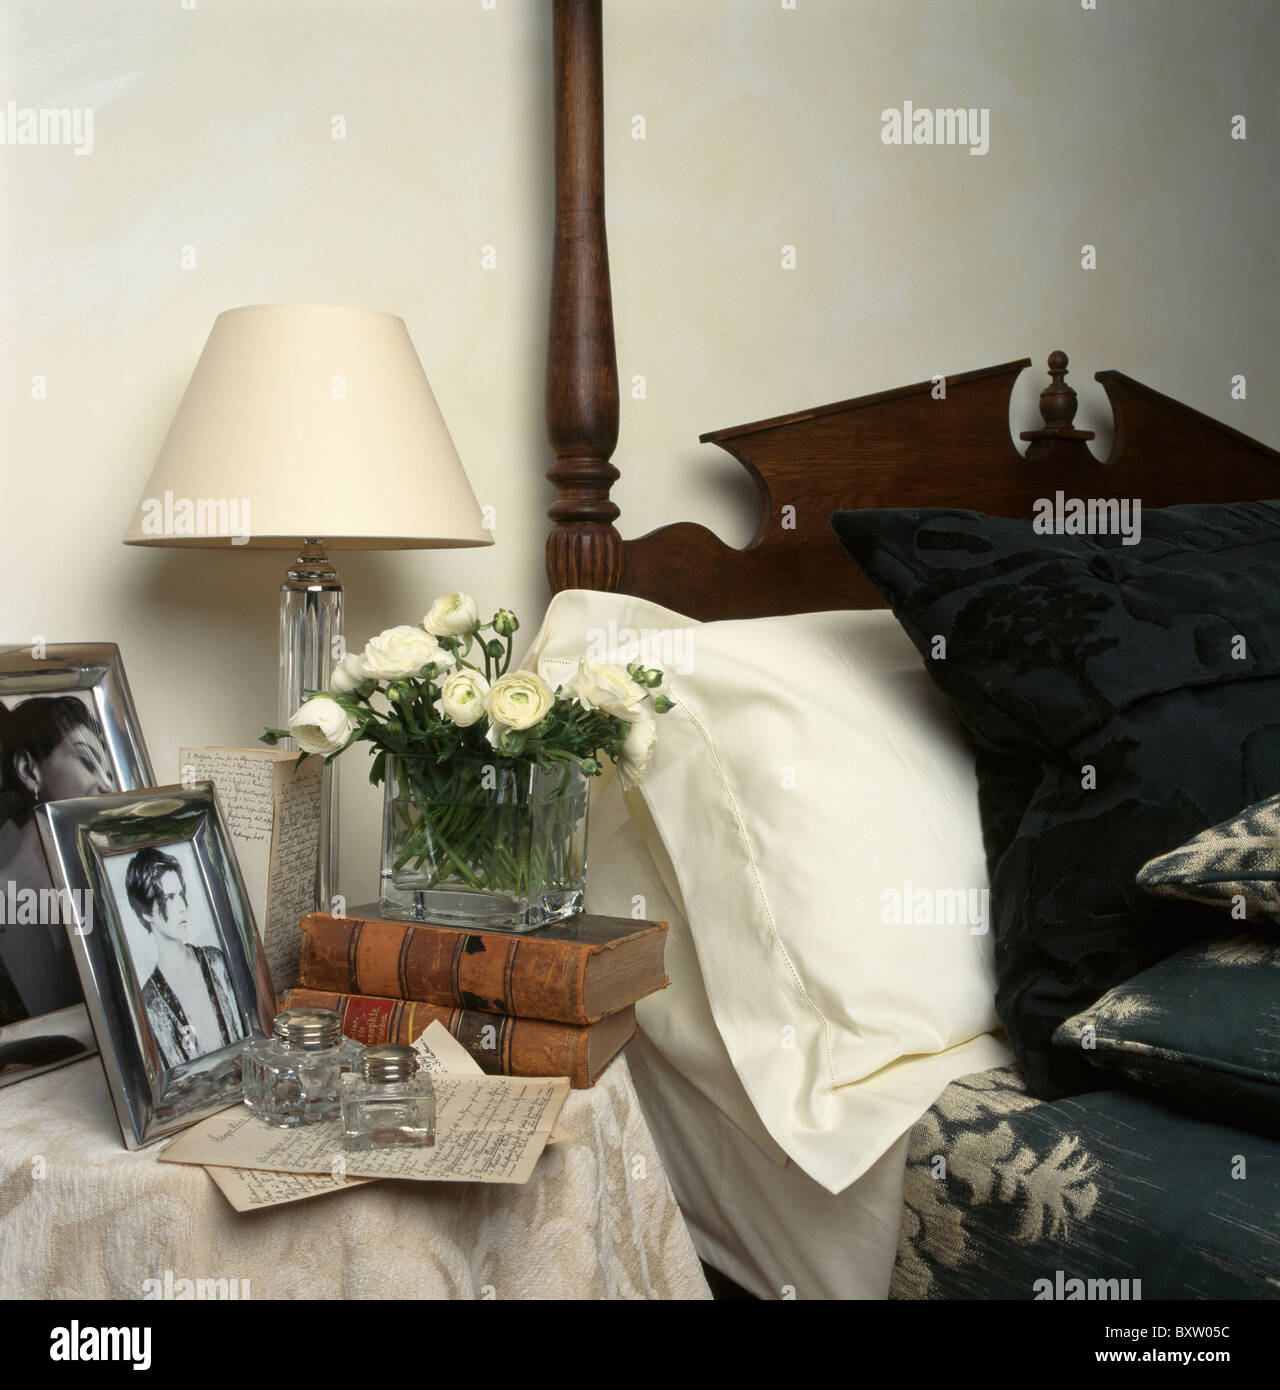 Close-up di crema lampada e fotografie incorniciate con libri sul comodino accanto al letto con cuscino bianco e modellato bed-cover Foto Stock